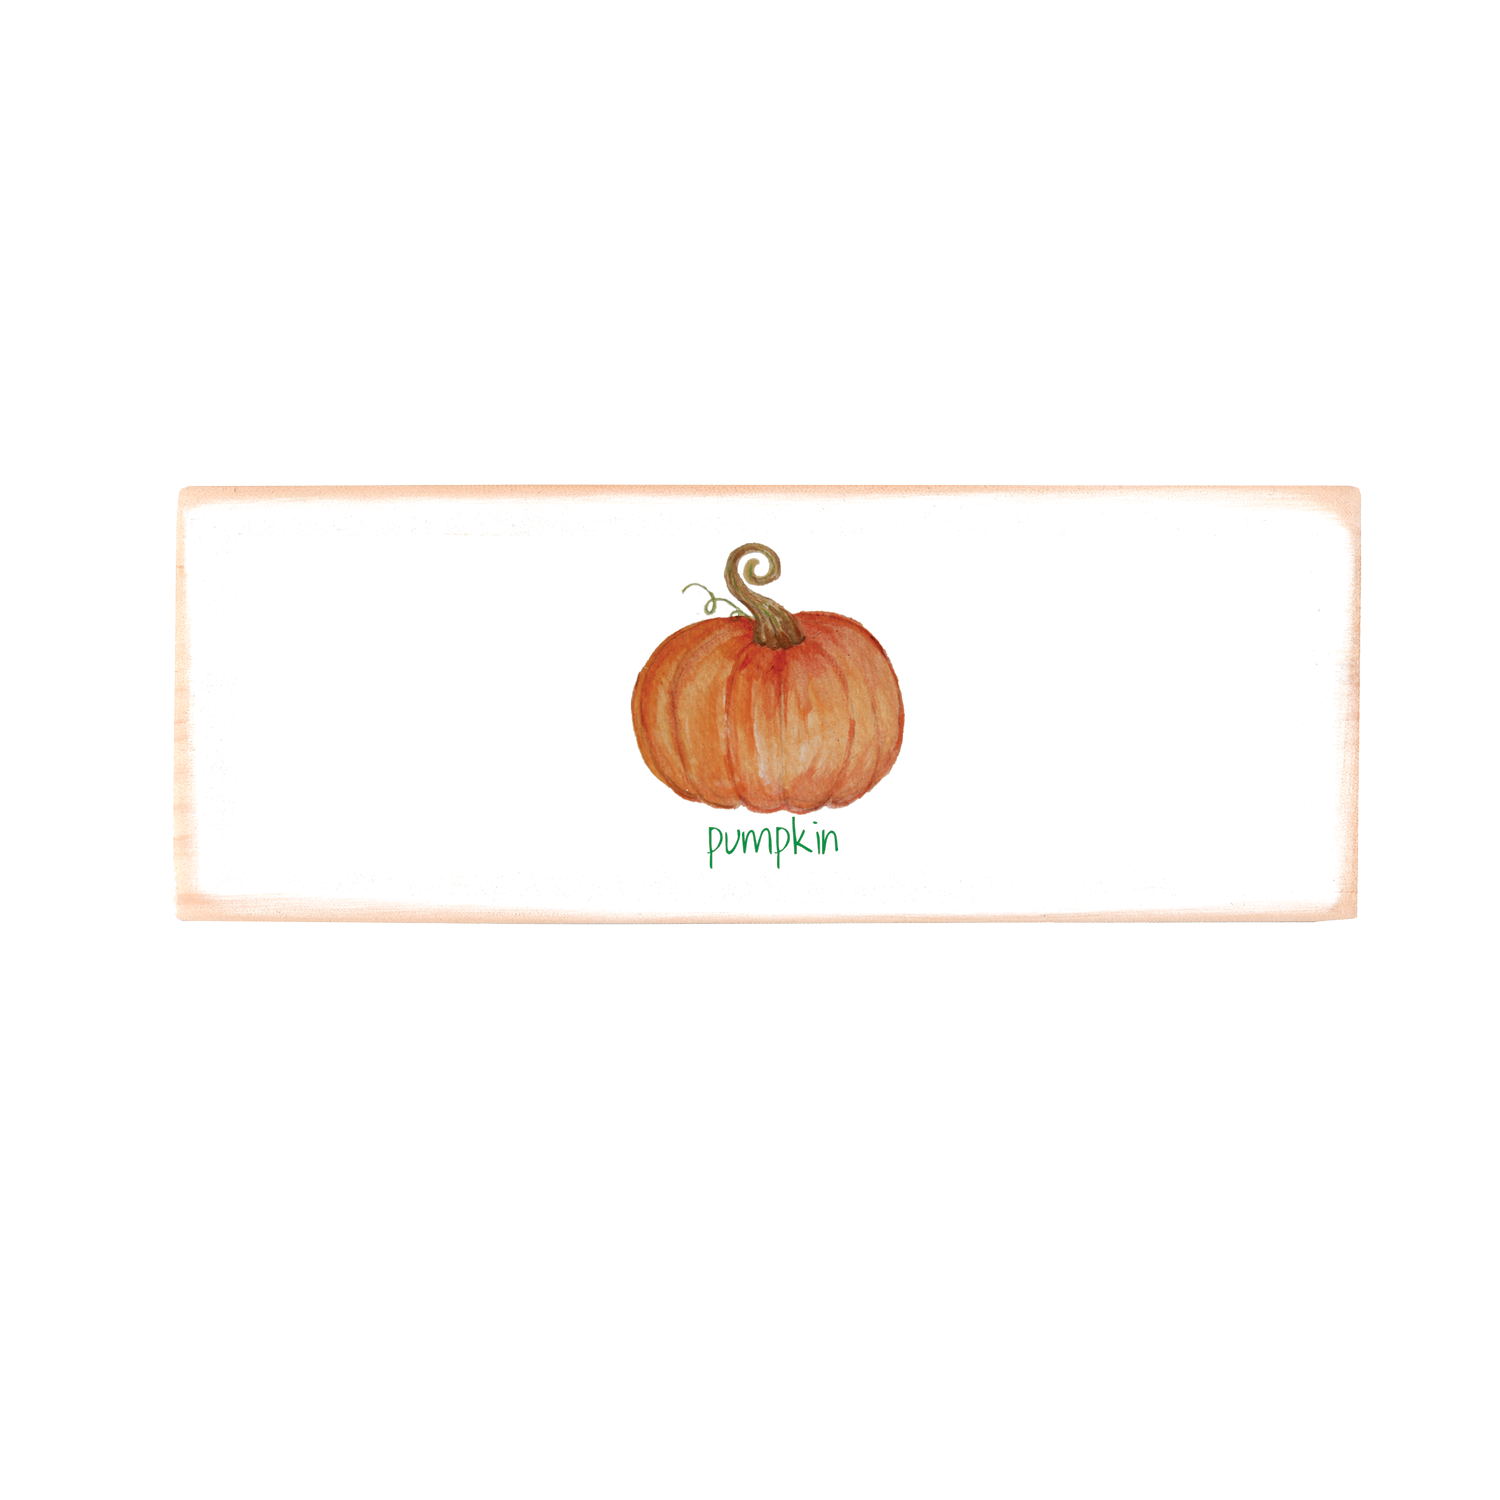 Pumpkin with pumpkin text rectangle wood block